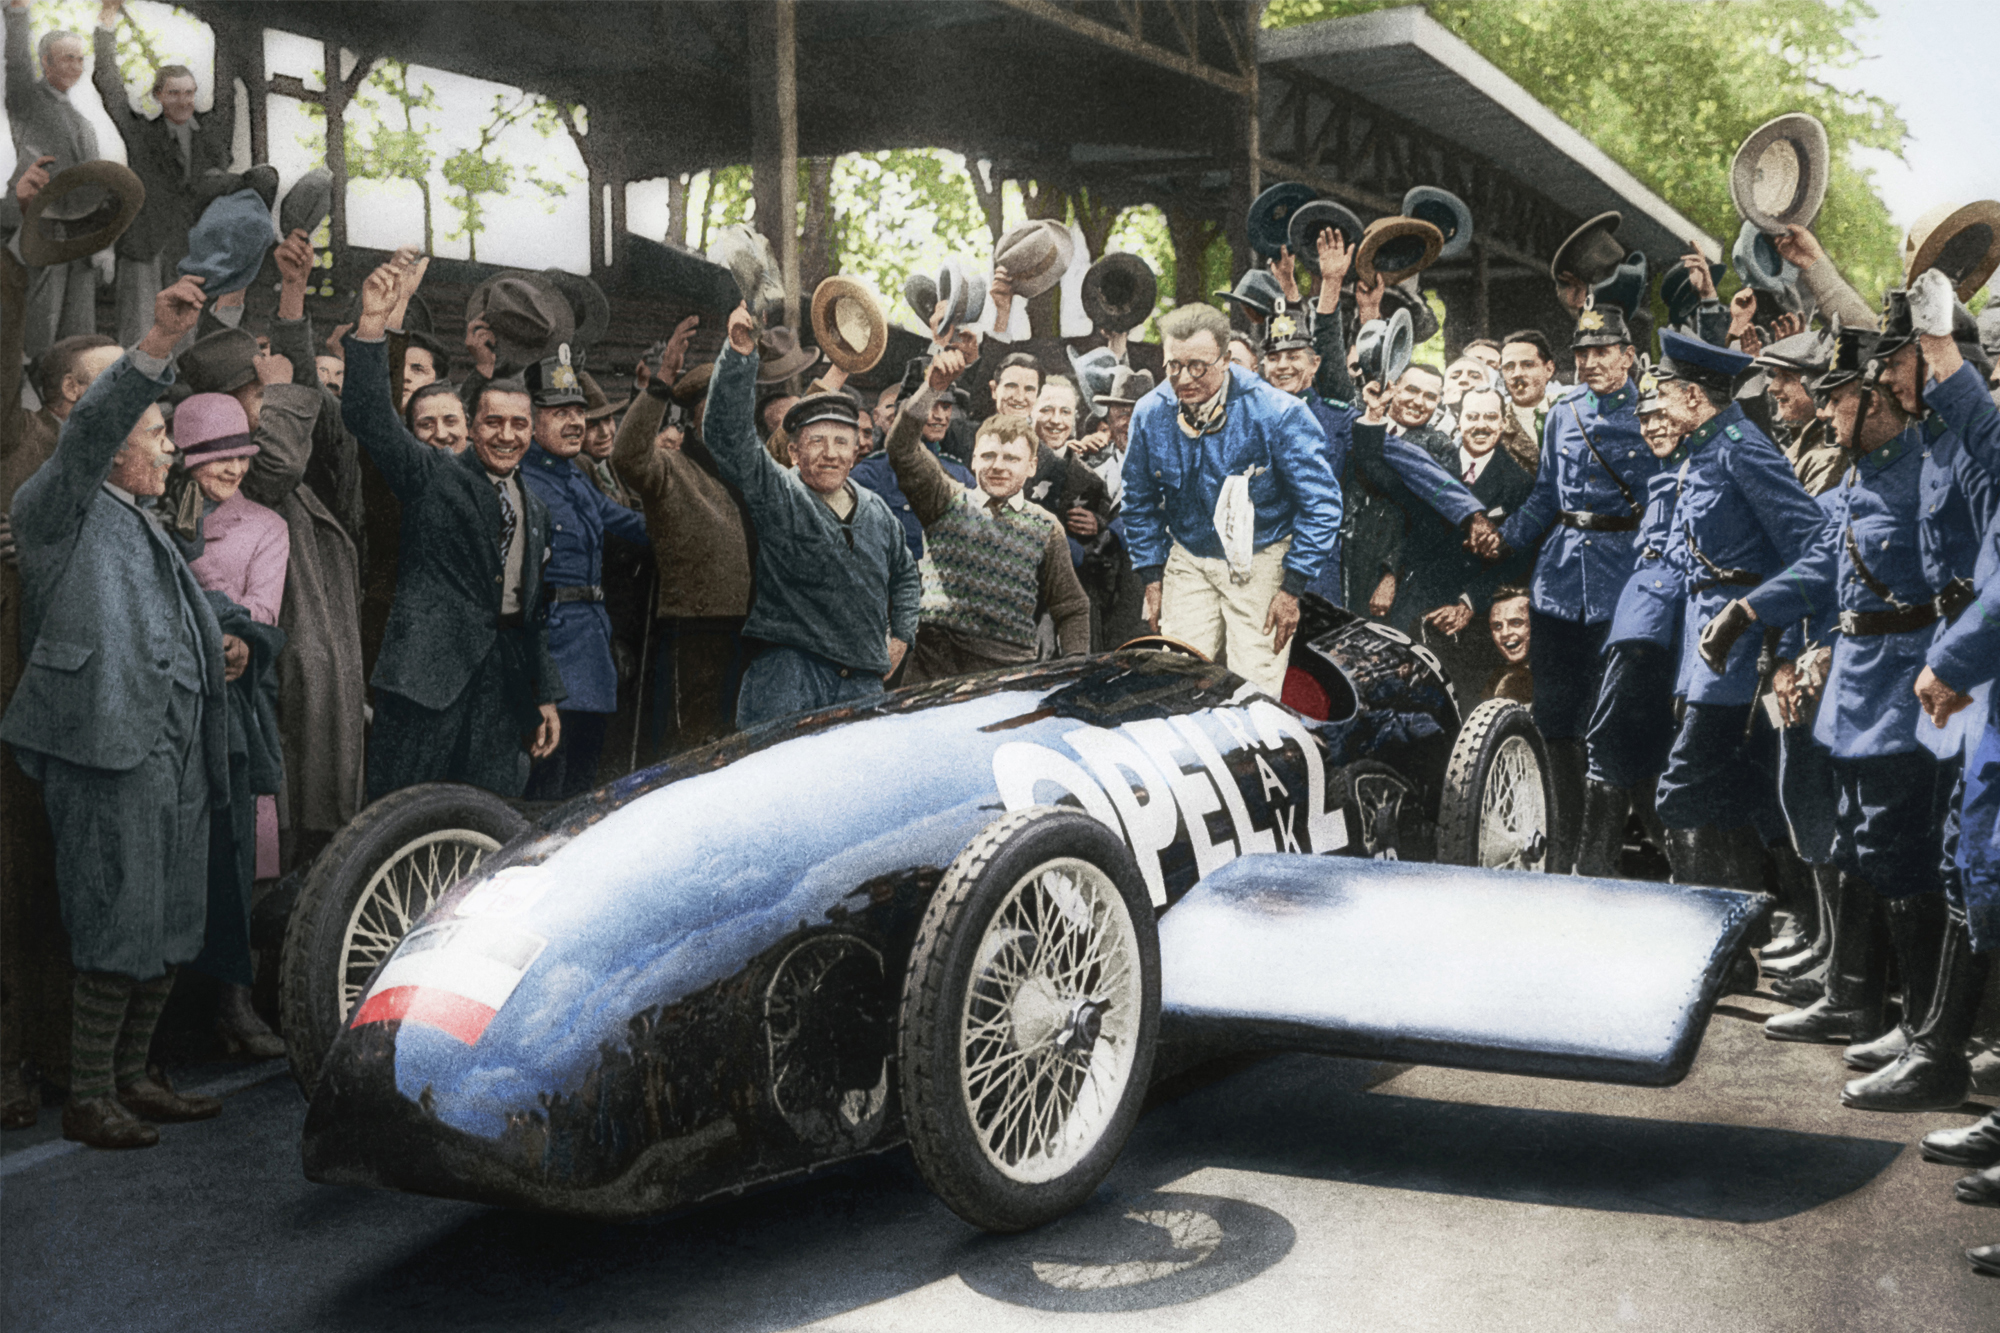 100 Χρόνια από τη νίκη της Opel στον πρώτο αγώνα στην πίστα του Avus